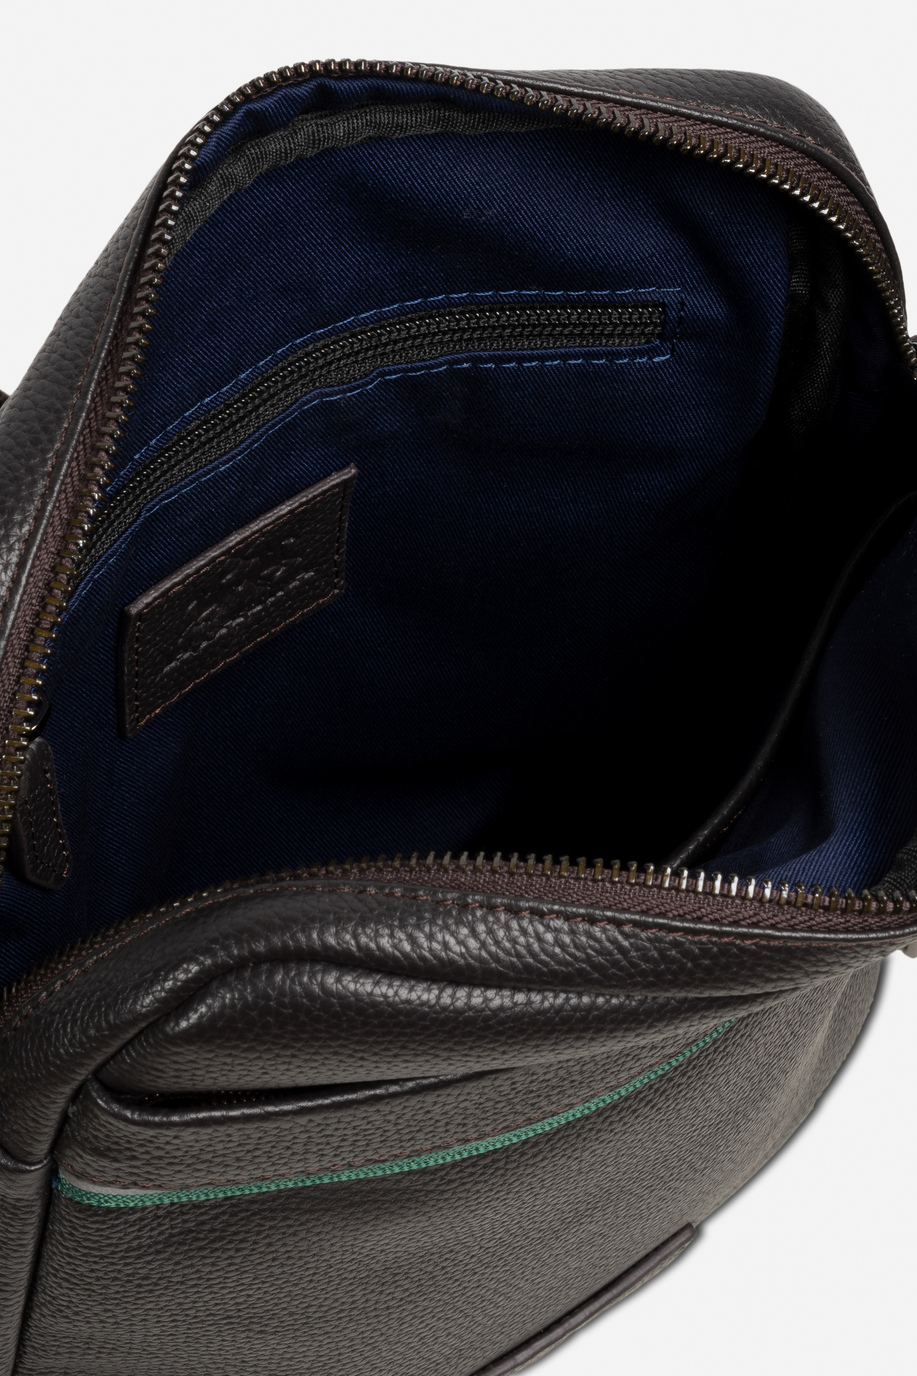 Herren Bodybag aus Leder mit Schulterriemen aus Polyesterband - test | La Martina - Official Online Shop